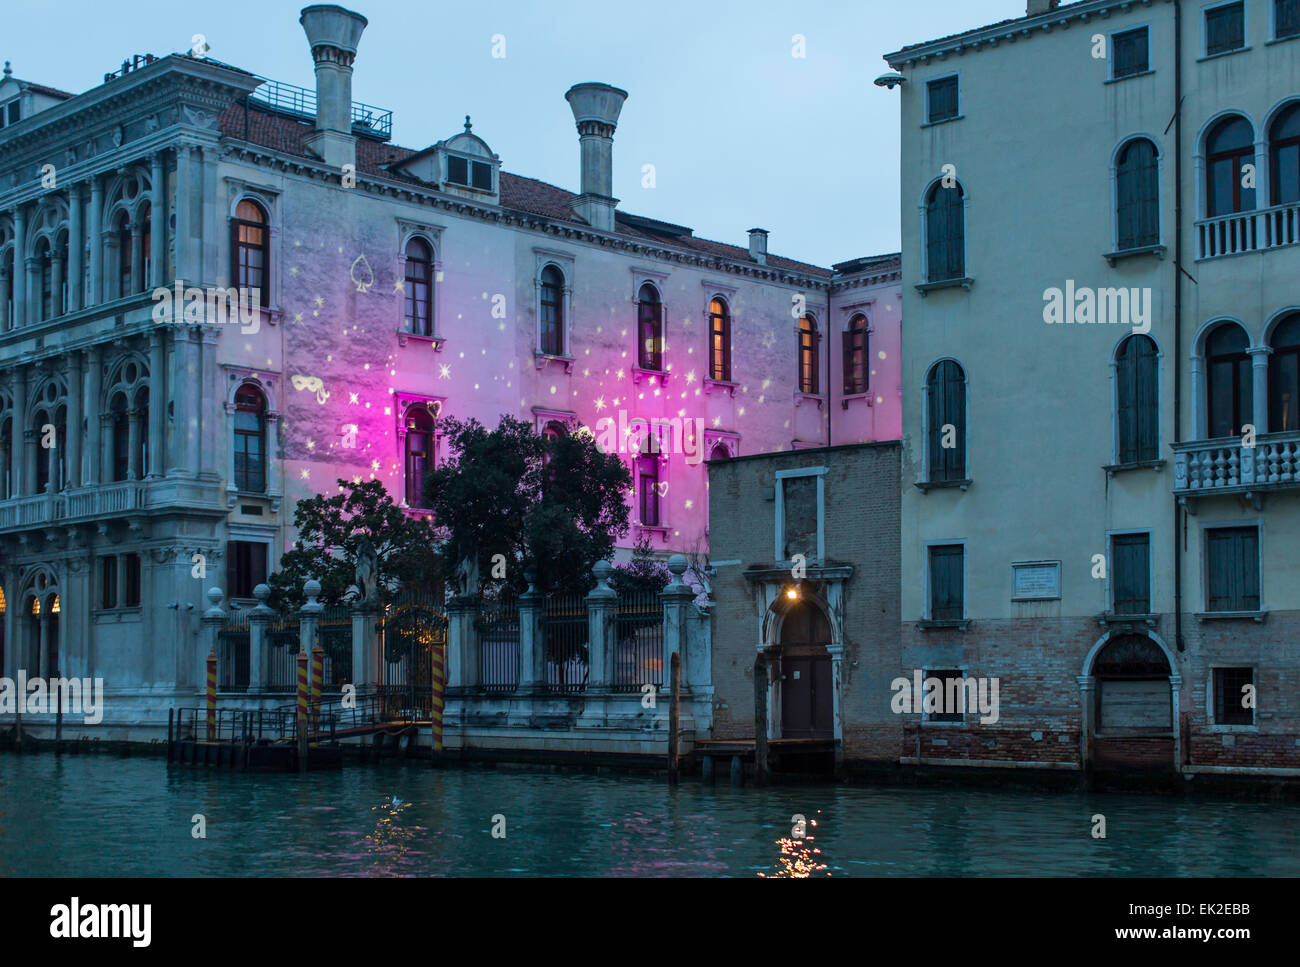 Carnival Lights on Palazzo, Venice, Italy Stock Photo